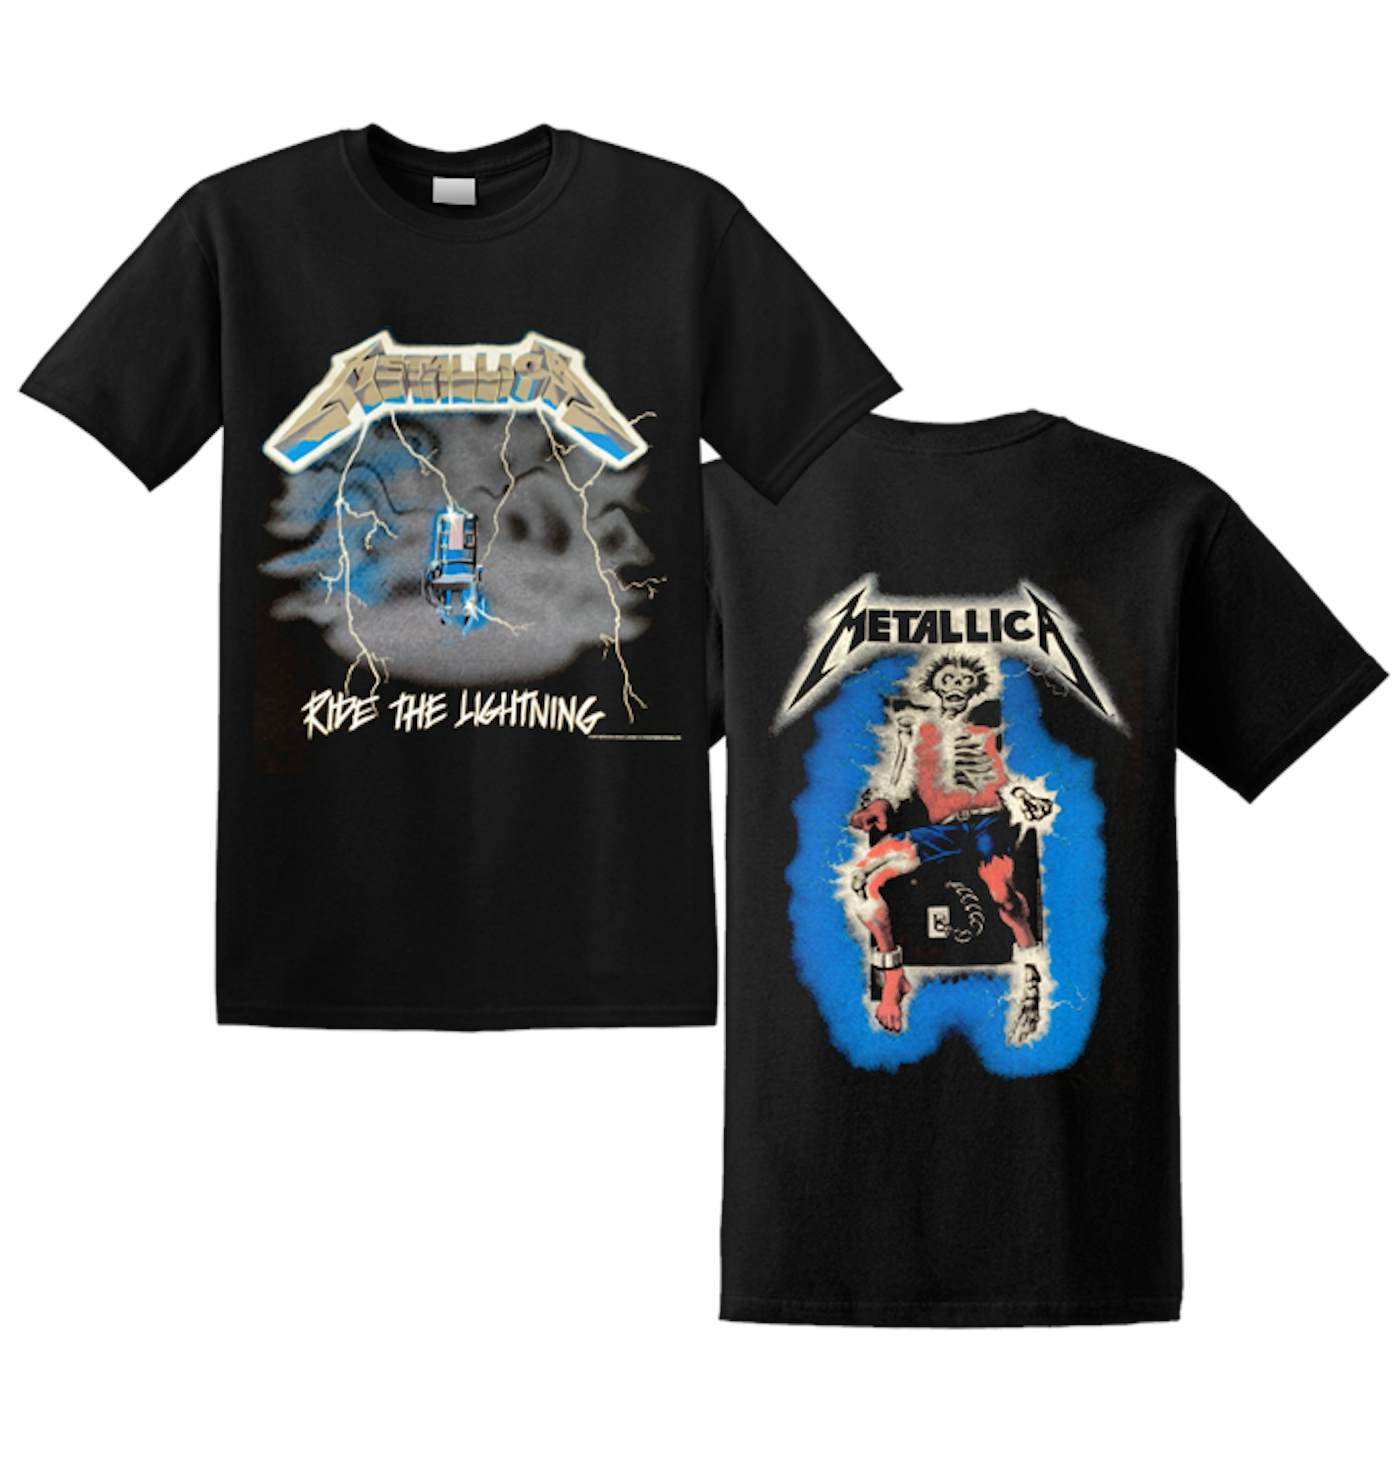 OFFICIAL Metallica T-Shirts & Merchandise